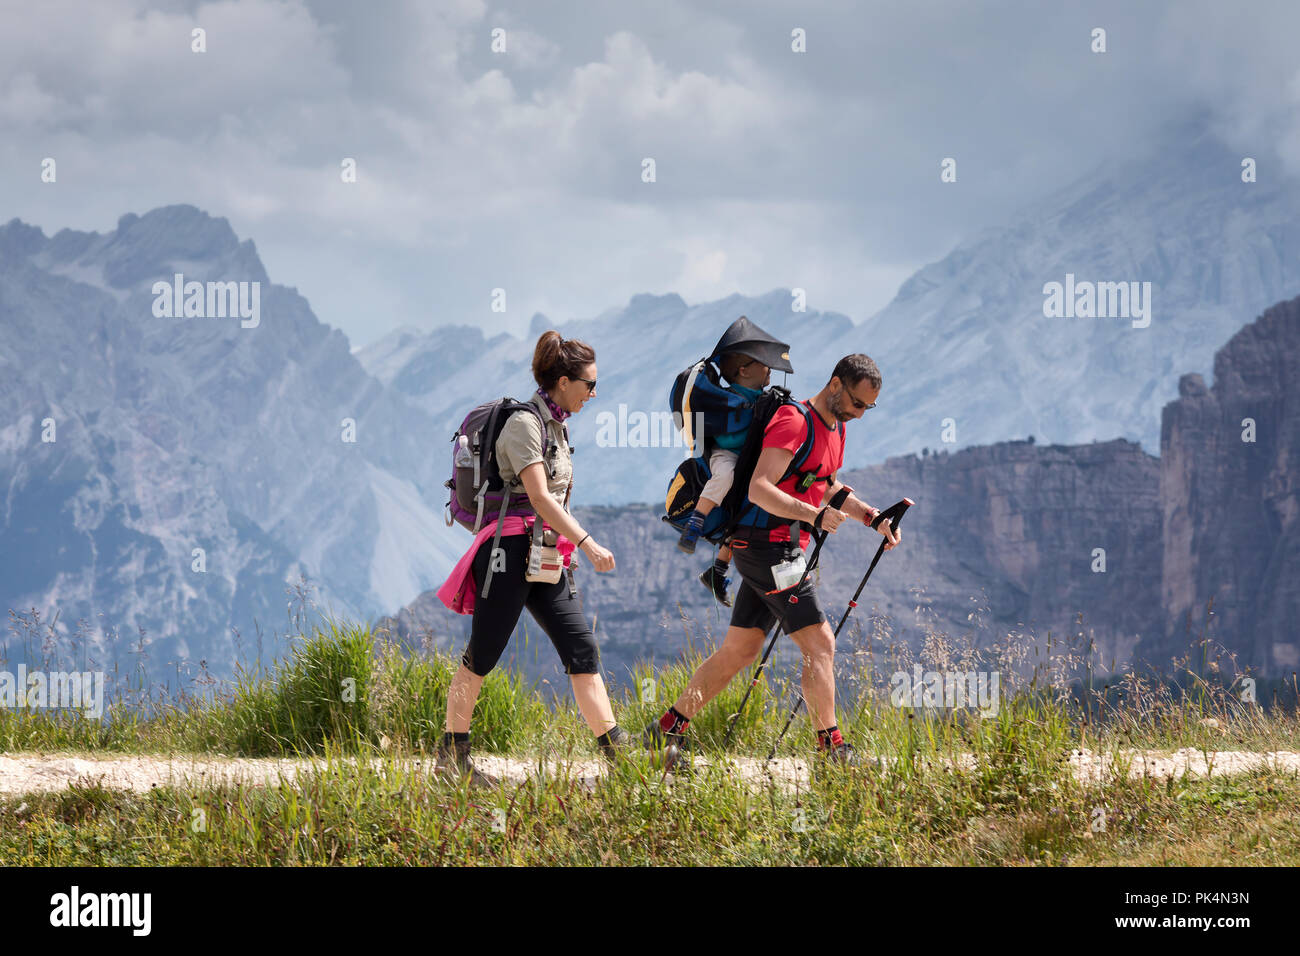 Cortina d'Ampezzo, Italien - 18 August, 2018: eine Familie der Wanderer geht auf den Höhenweg, der Vater seinen Sohn trägt auf seinen Schultern. In der backgro Stockfoto